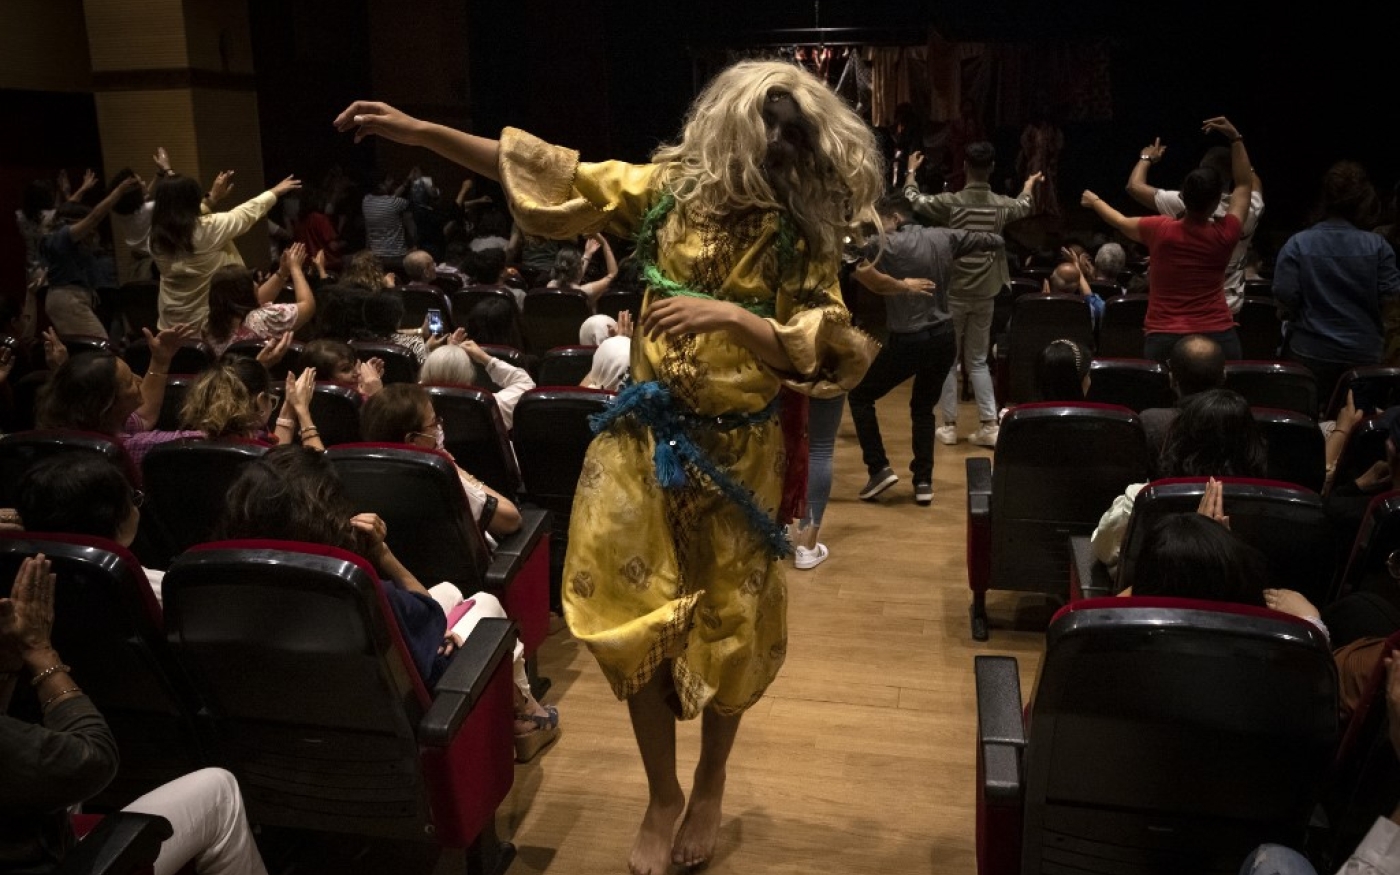 Des hommes maquillés et perruqués virevoltent sous les applaudissements de leur public au Maroc, afin de ressusciter la comédie musicale art de « Aita », défiant les stéréotypes (AFP/Fadel Senna